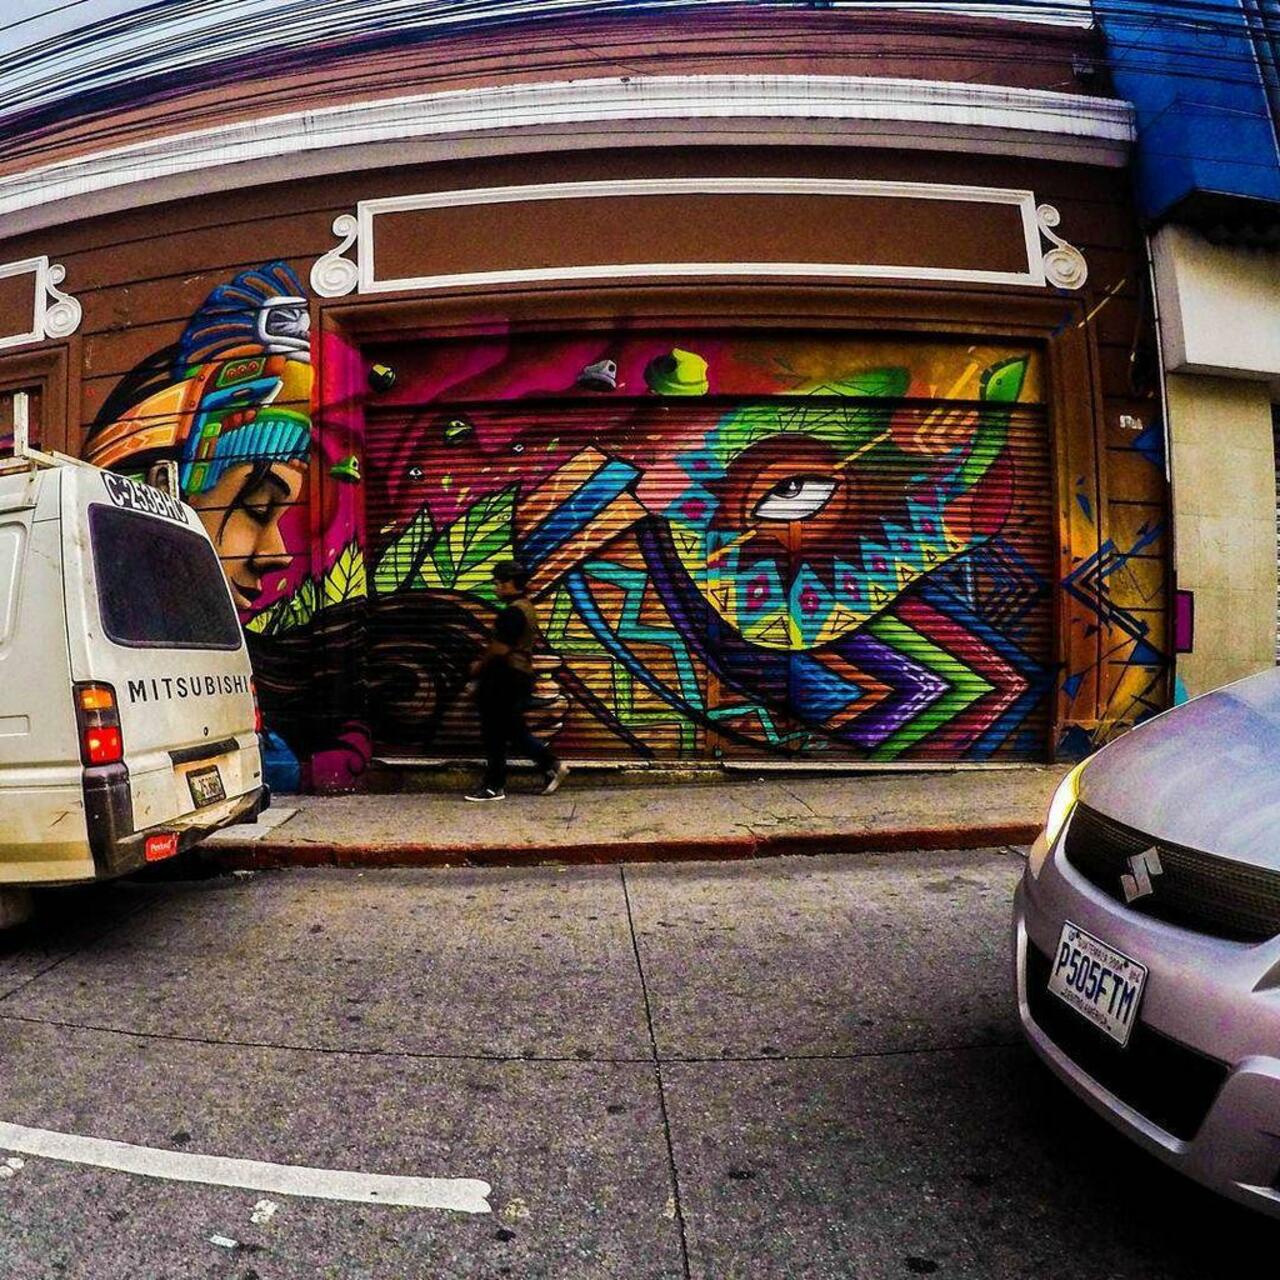 RT @BenWest: RT @IndieUndrground: via #pablovelasquez_l “http://ift.tt/1YI5wpr” #graffiti #streetart http://t.co/nZRPR7pjBG